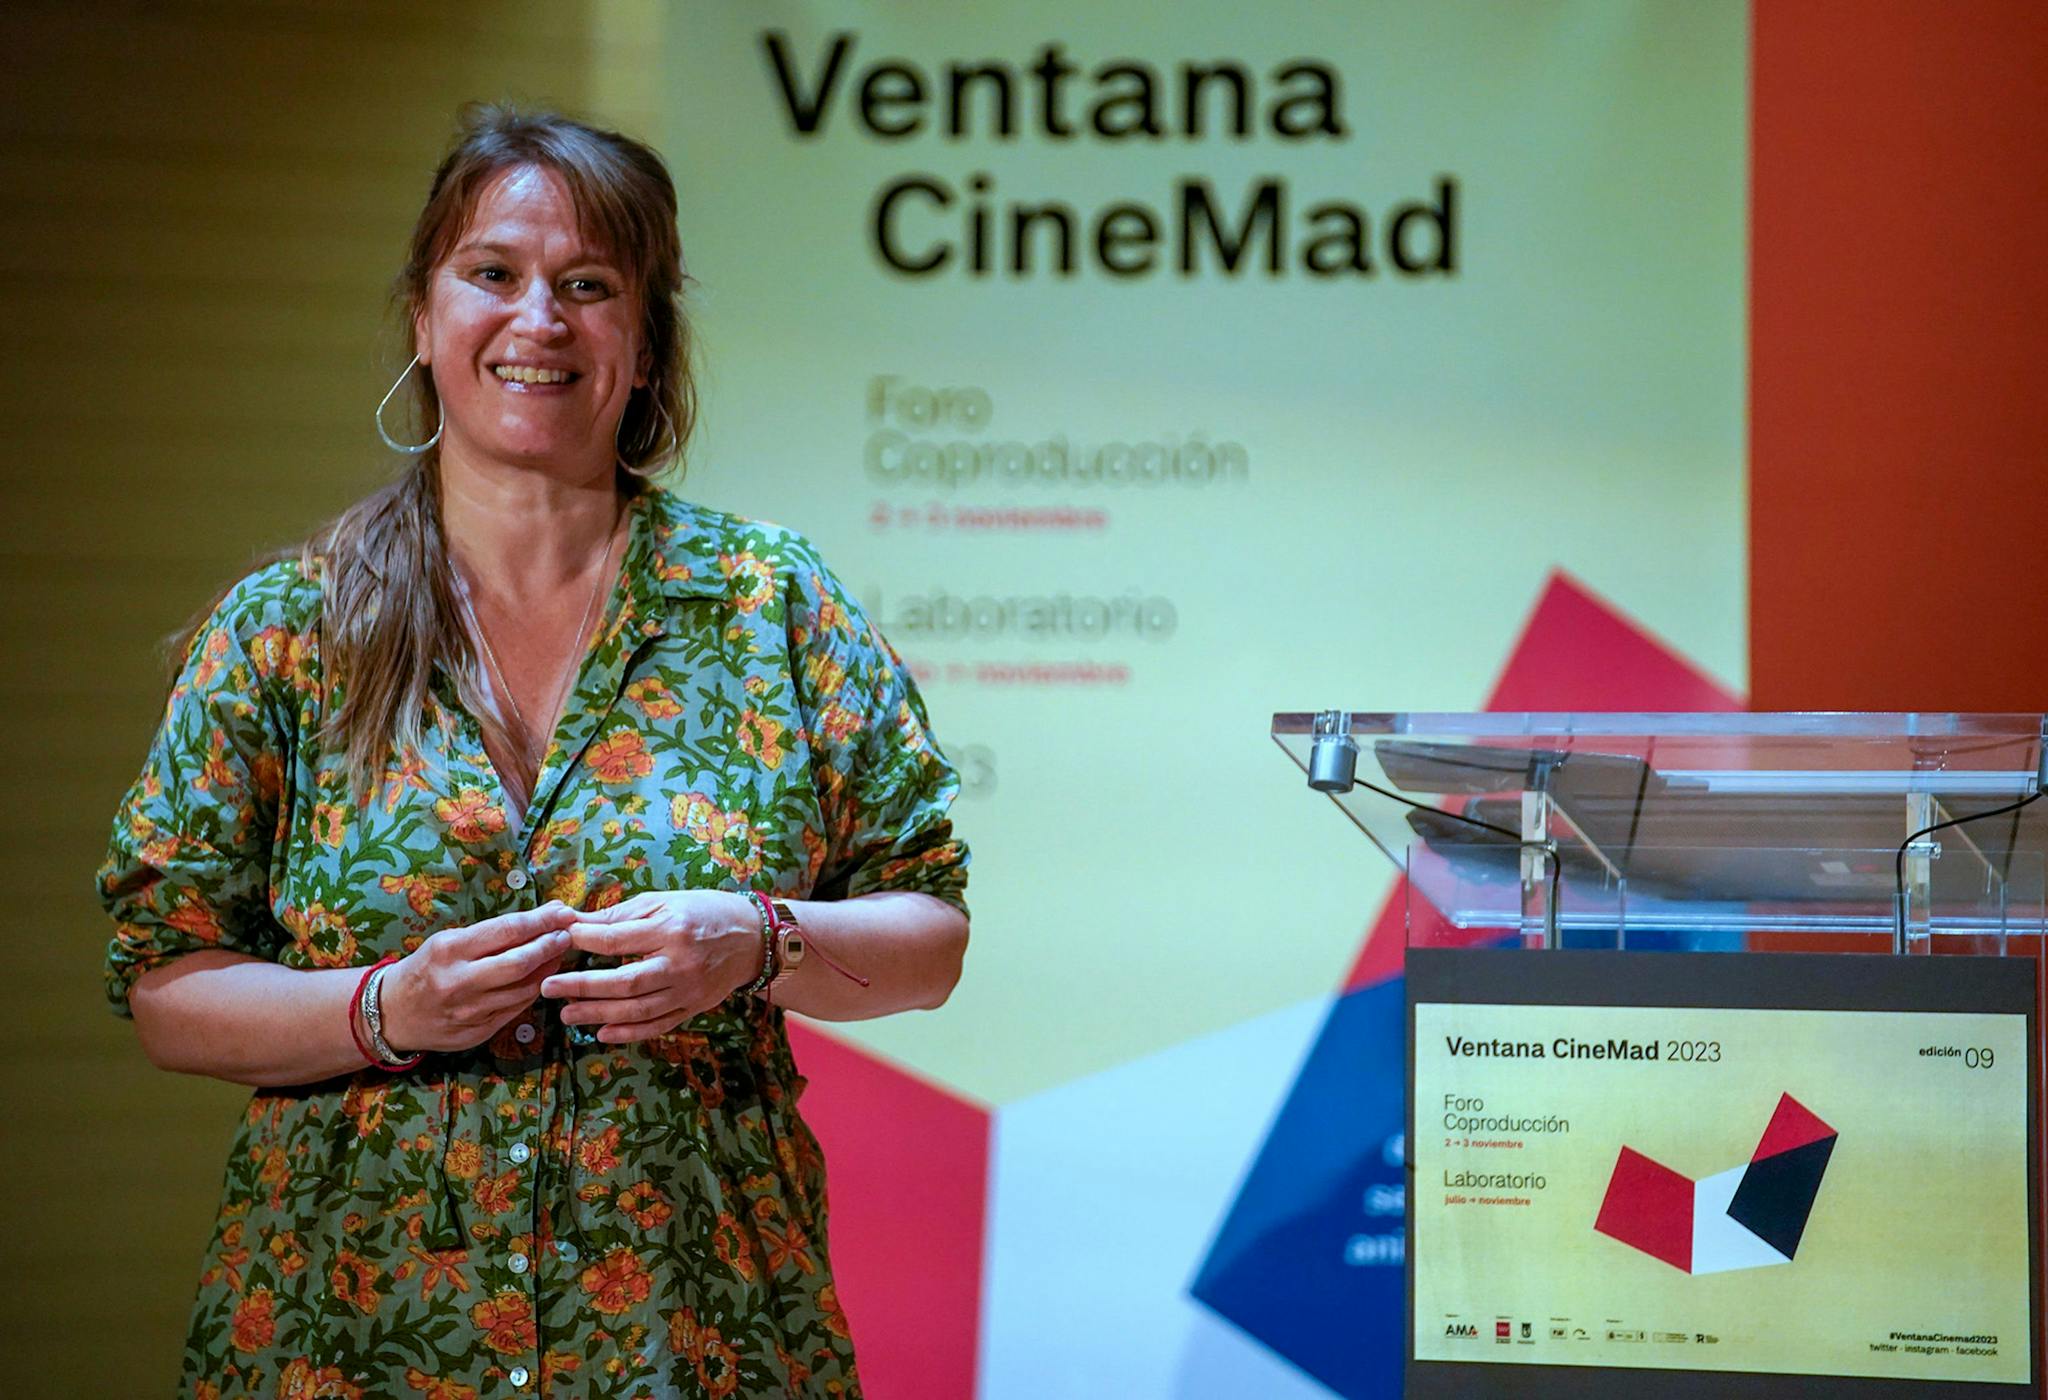 Antes de las jornadas de coproducción, Ventana CineMad llevó a cabo un laboratorio este verano